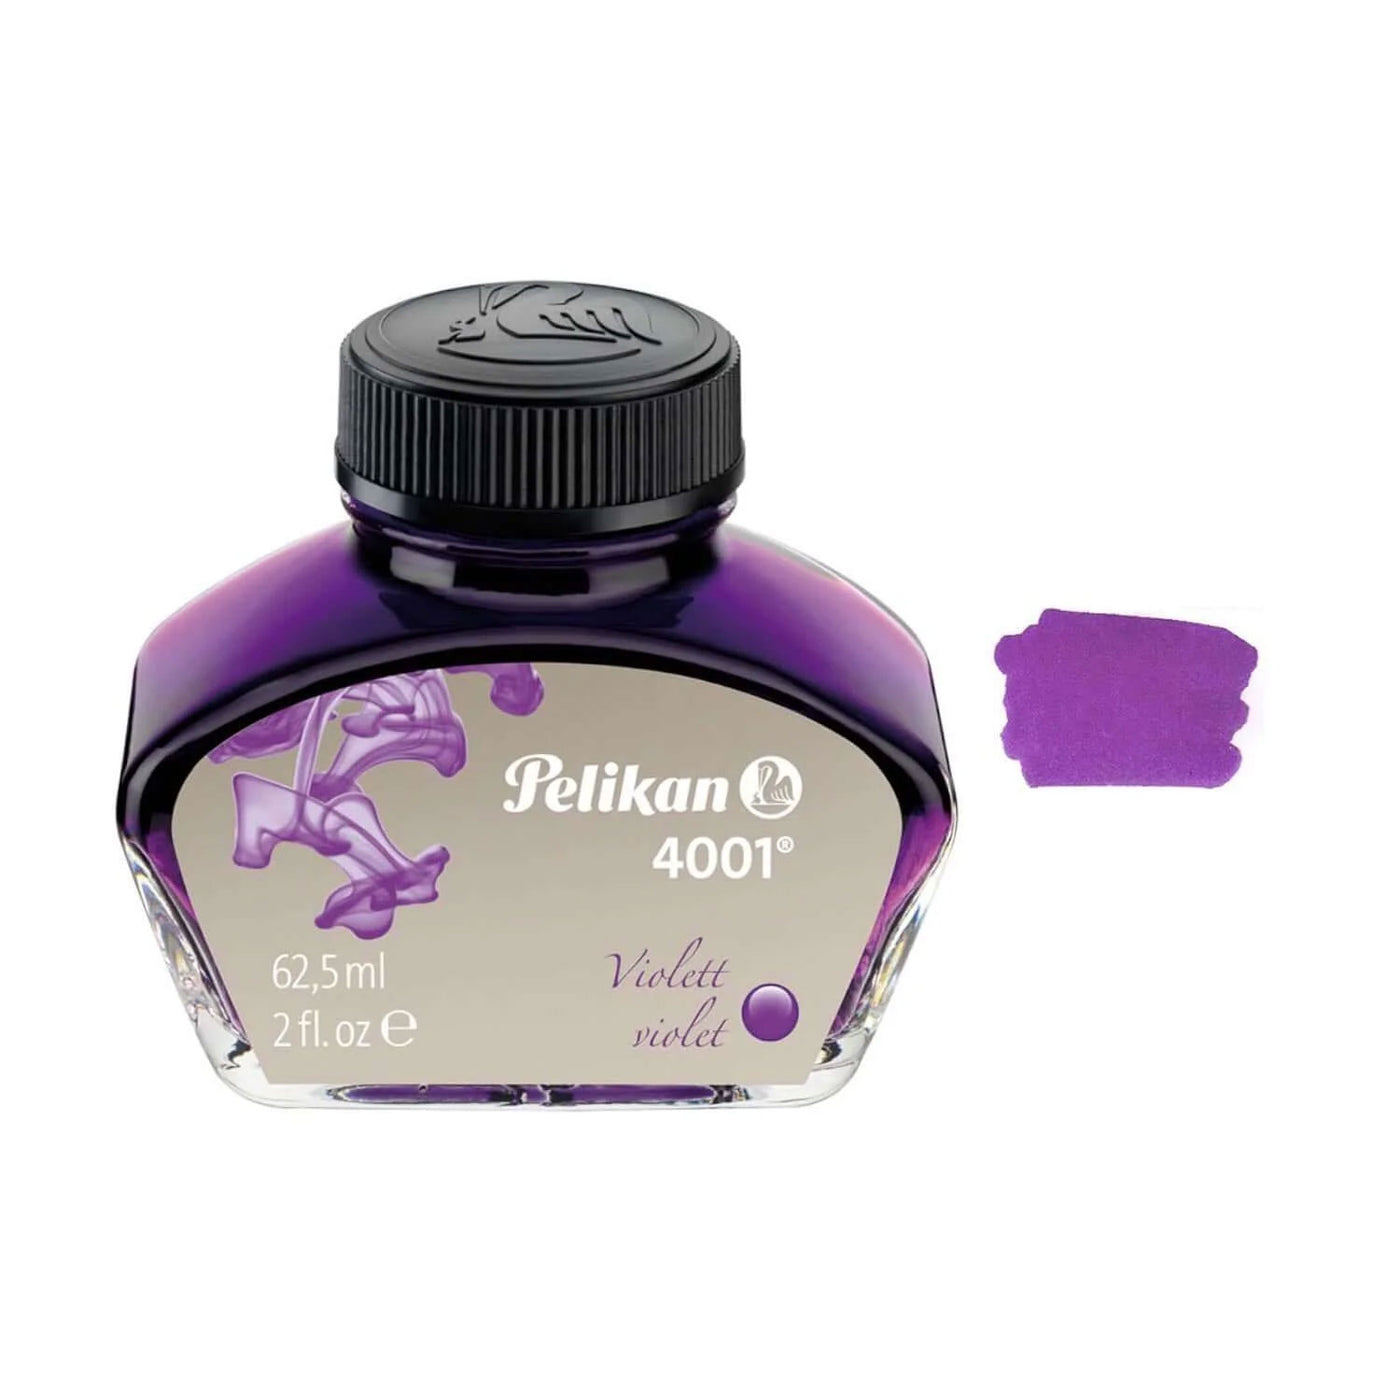 Pelikan 4001 Ink, Violet - 62.5ml